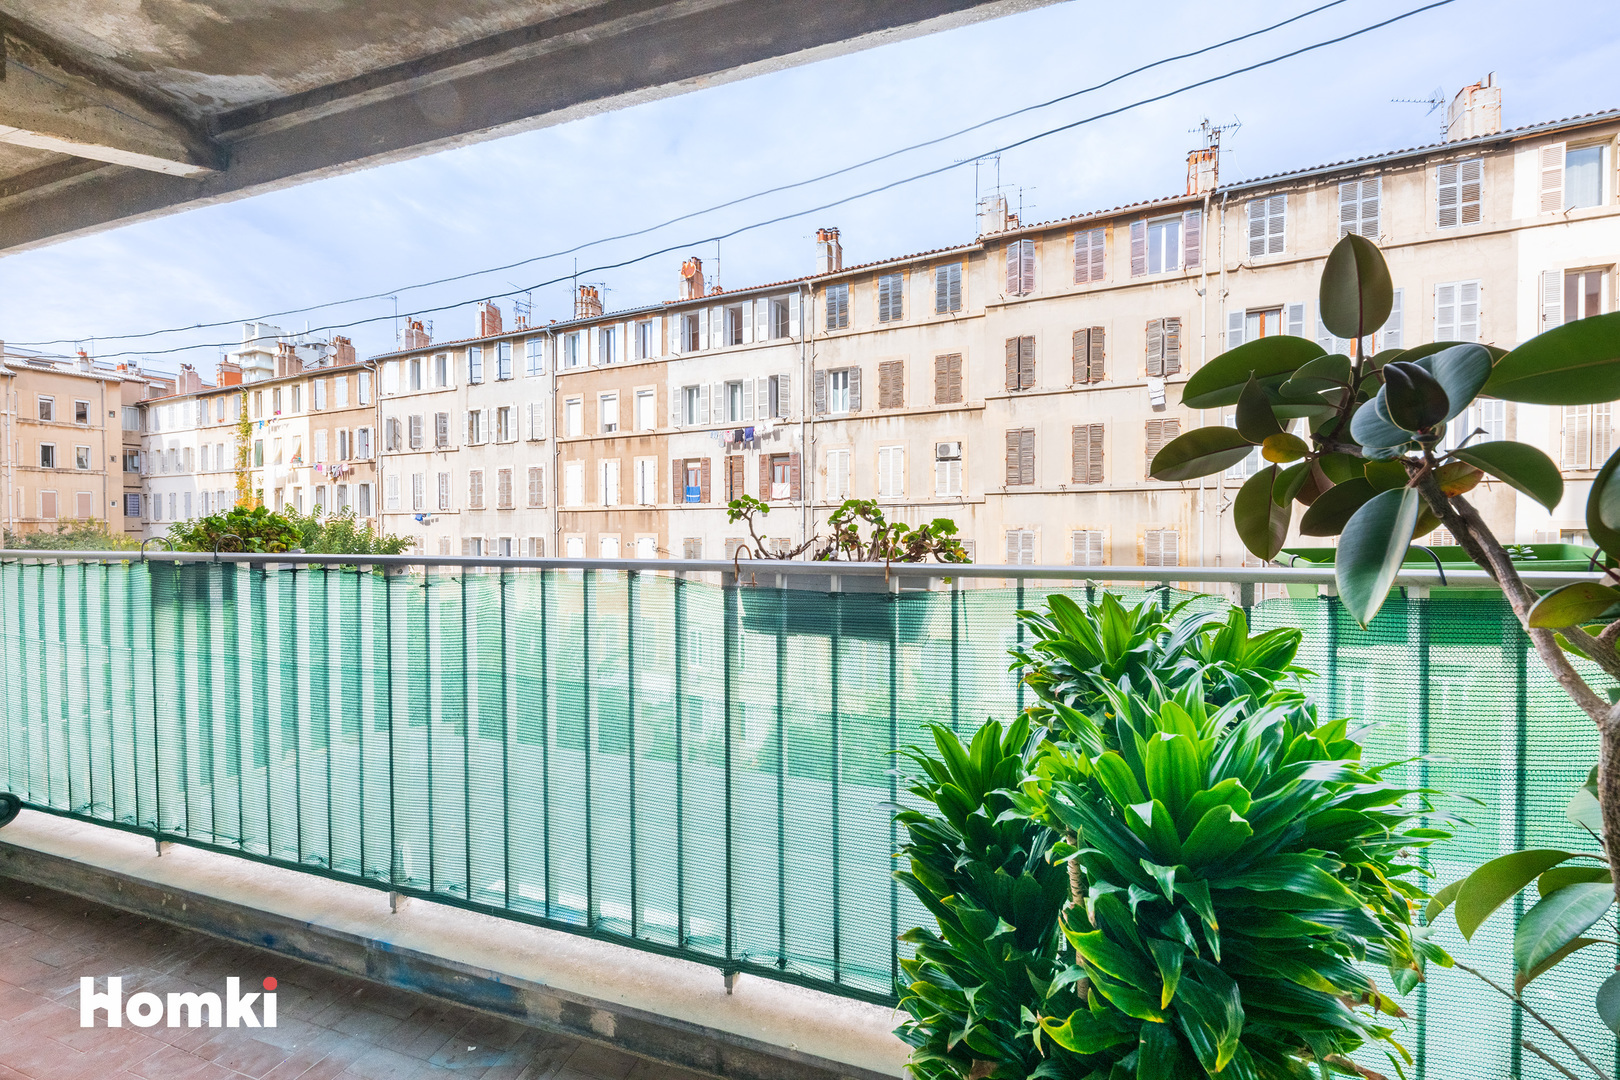 Homki - Vente Appartement  de 48.0 m² à Marseille 13007